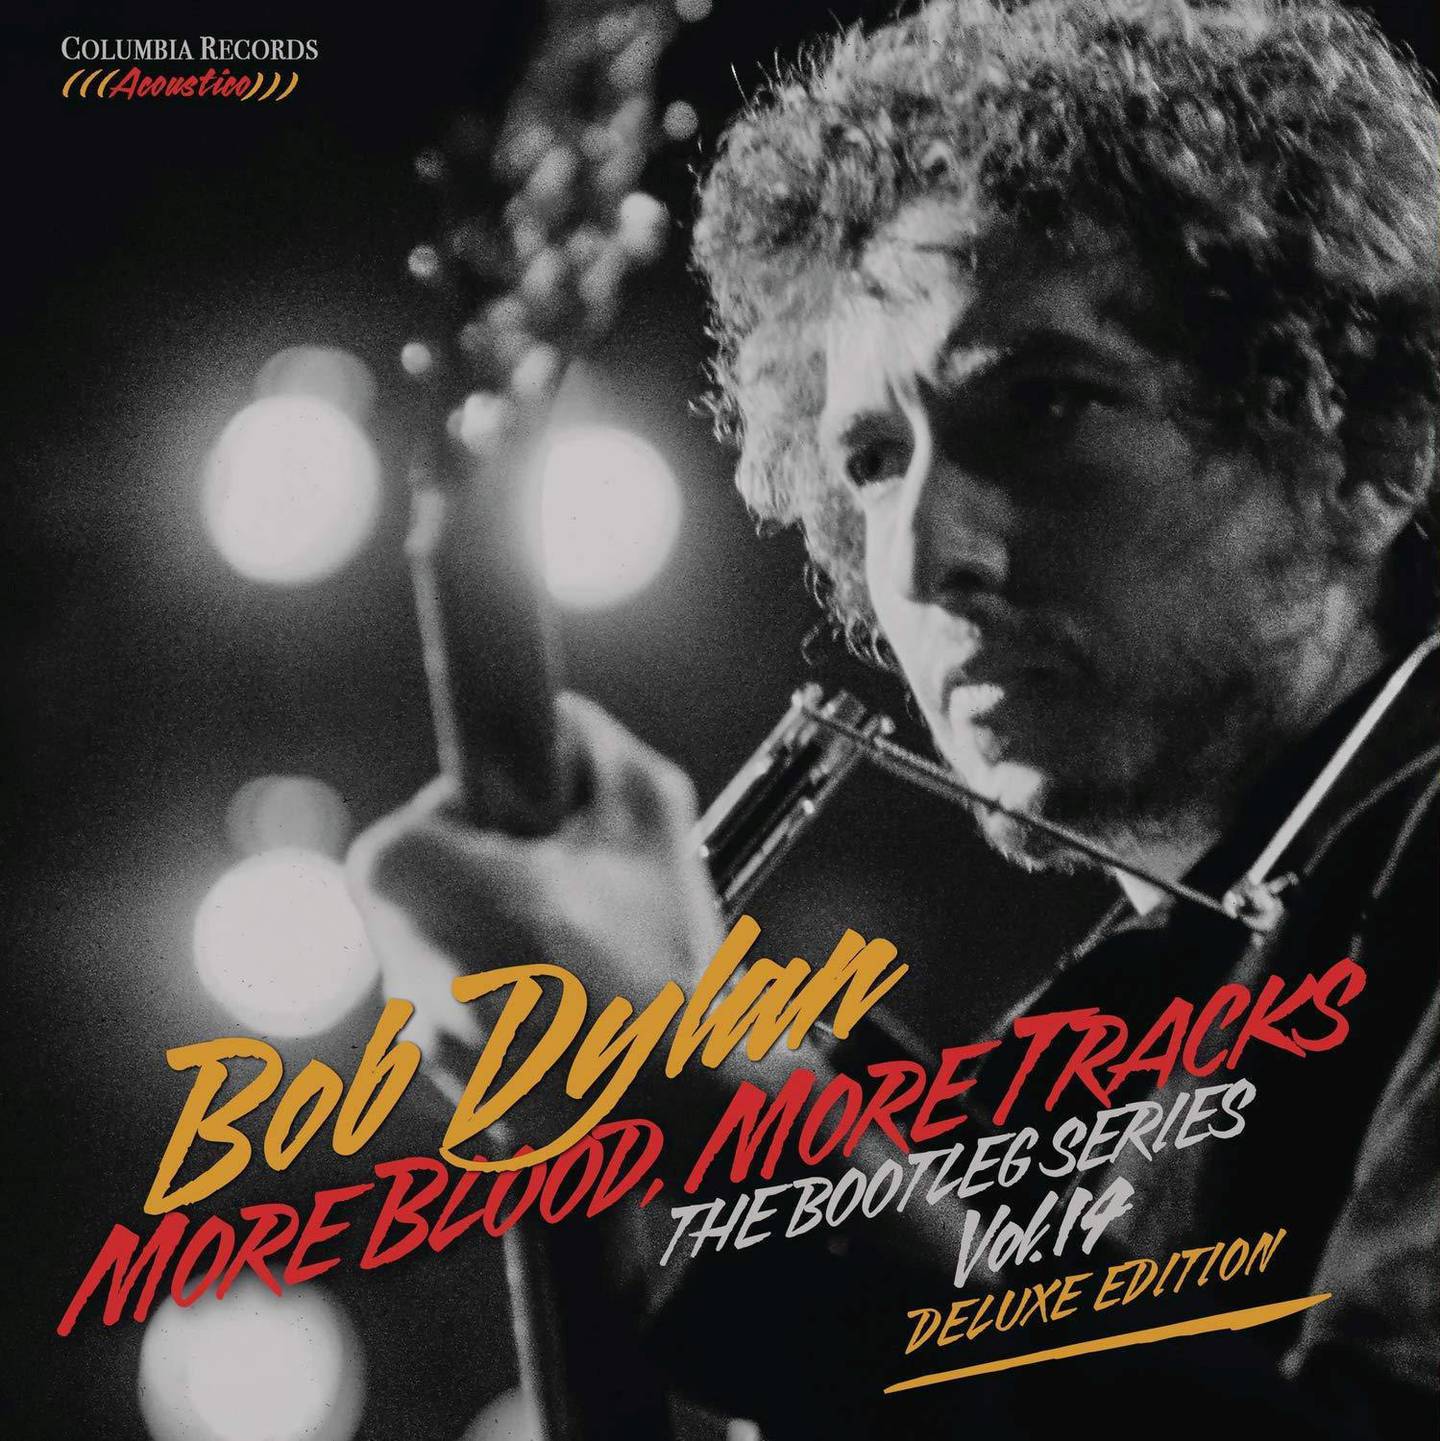 Bob Dylan,KUL Anm Musikk B:«More Blood more Tracks»
KUL Anm Musikk C:Columbia Legacy